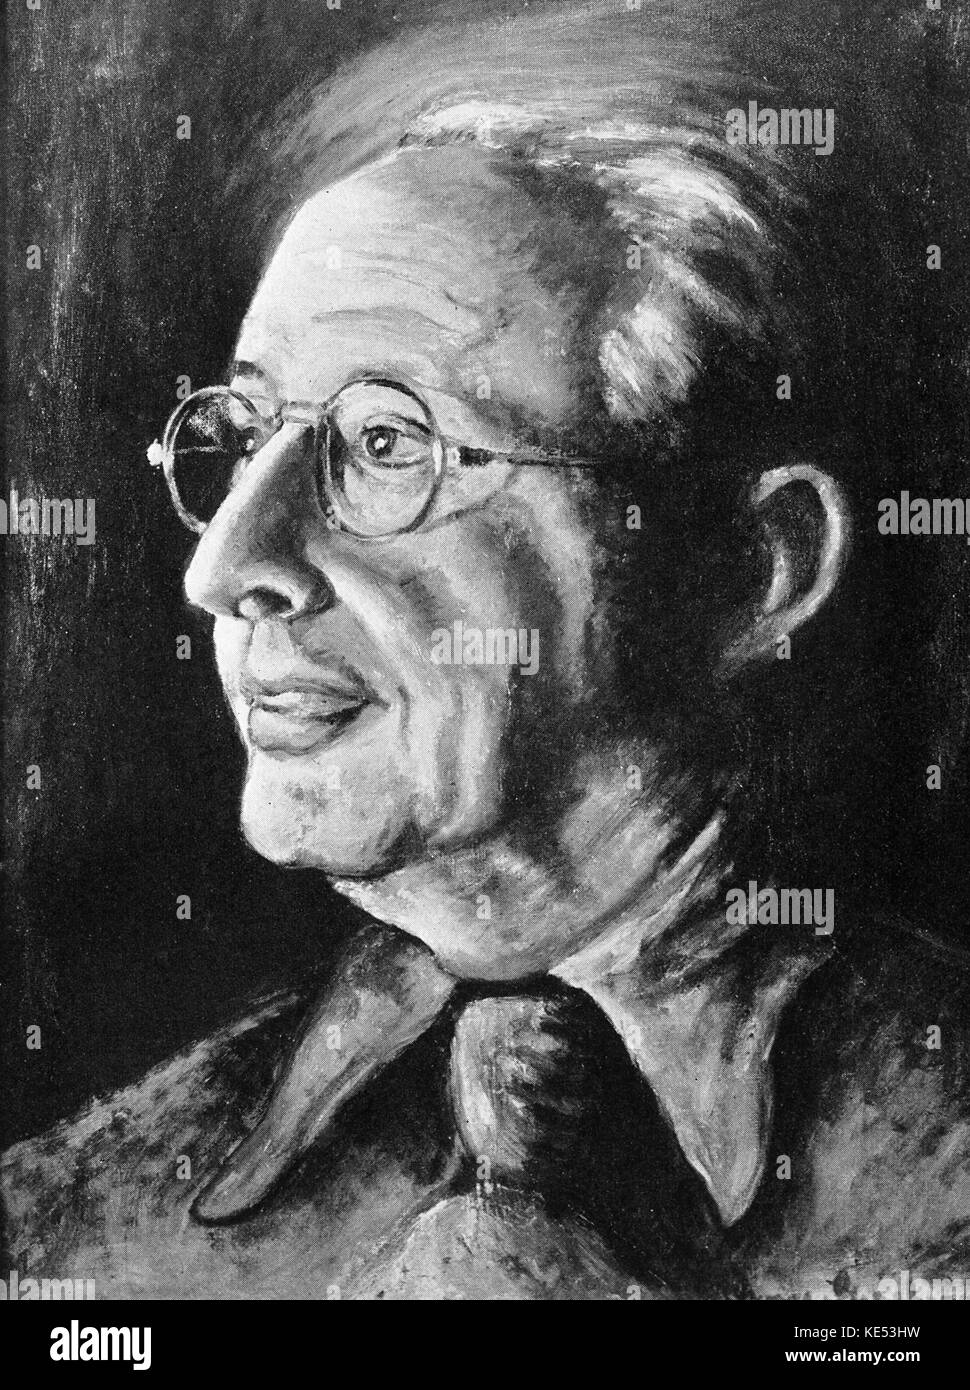 George Gershwin 's de pintura de Jerome Kern 1937 (compositor estadounidense el 27 de enero de 1885 - 11 de noviembre de 1945). GG: compositor y pianista estadounidense, 26 de septiembre de 1898 - 11 de julio de 1937 Foto de stock